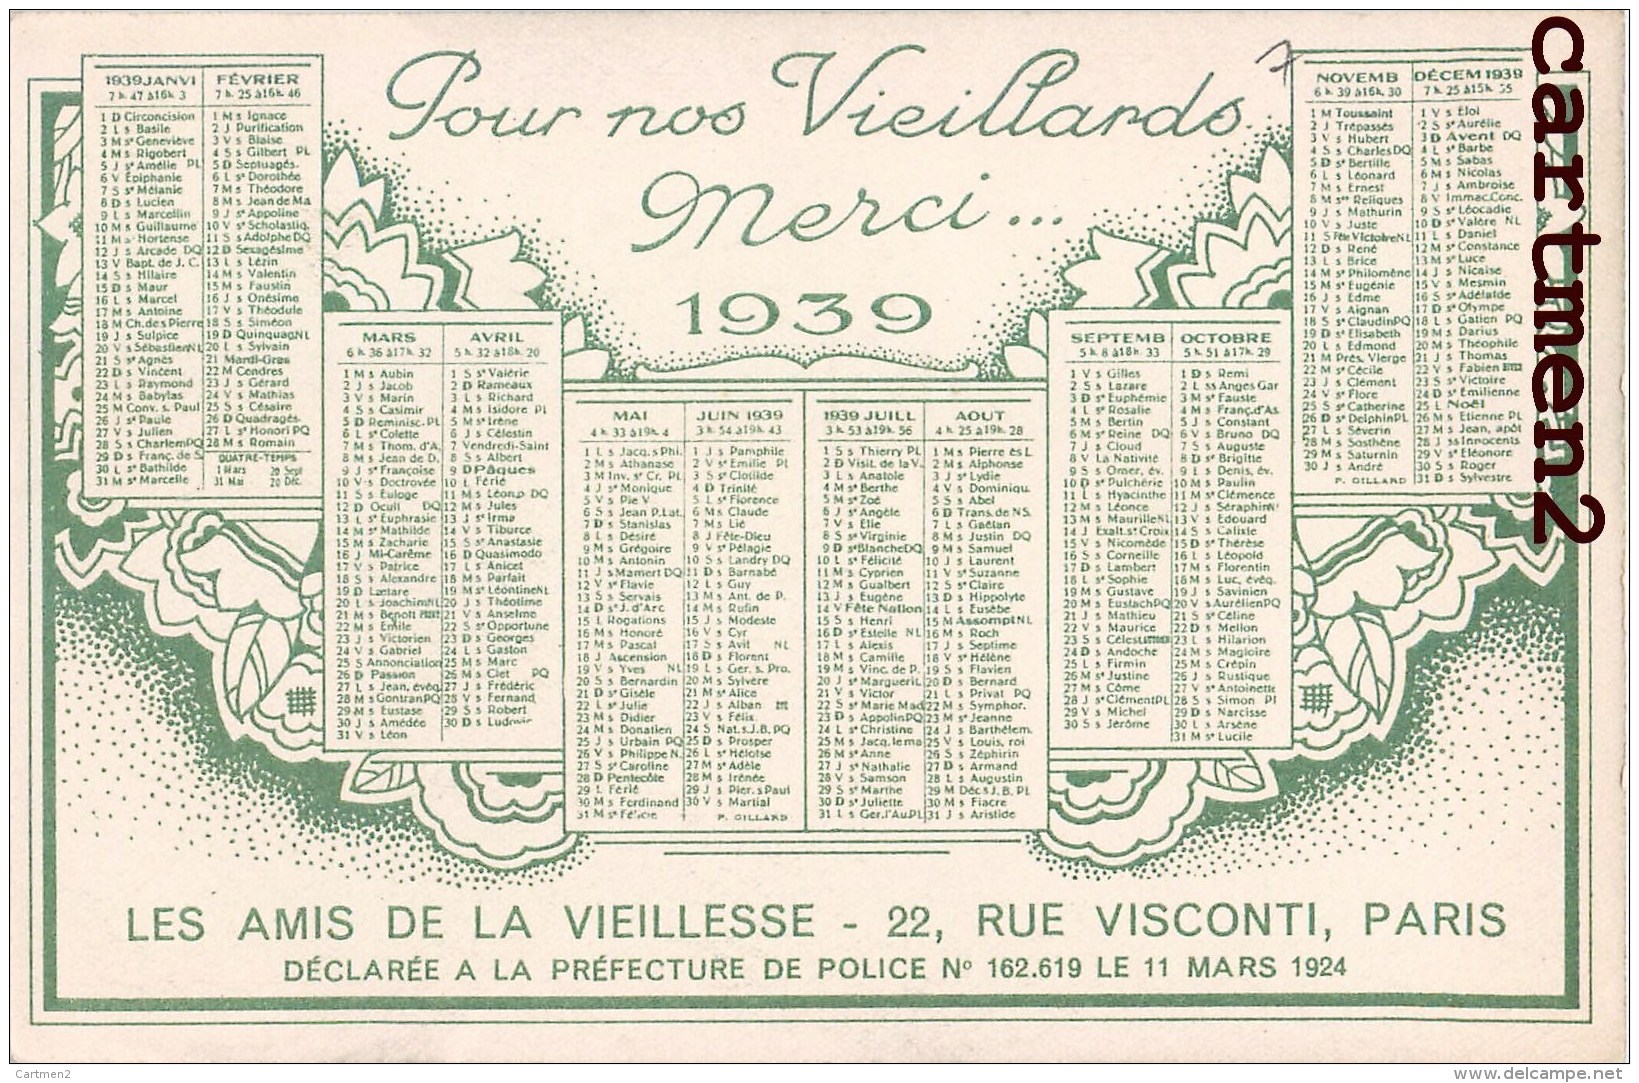 CALENDRIER ANNEE 1939 LES AMIS DE LA VIEILLESSE 22 RUE VISCONTI PARIS ASSOCIATION CARITATIVE ILLUSTRATEUR - Vakbonden